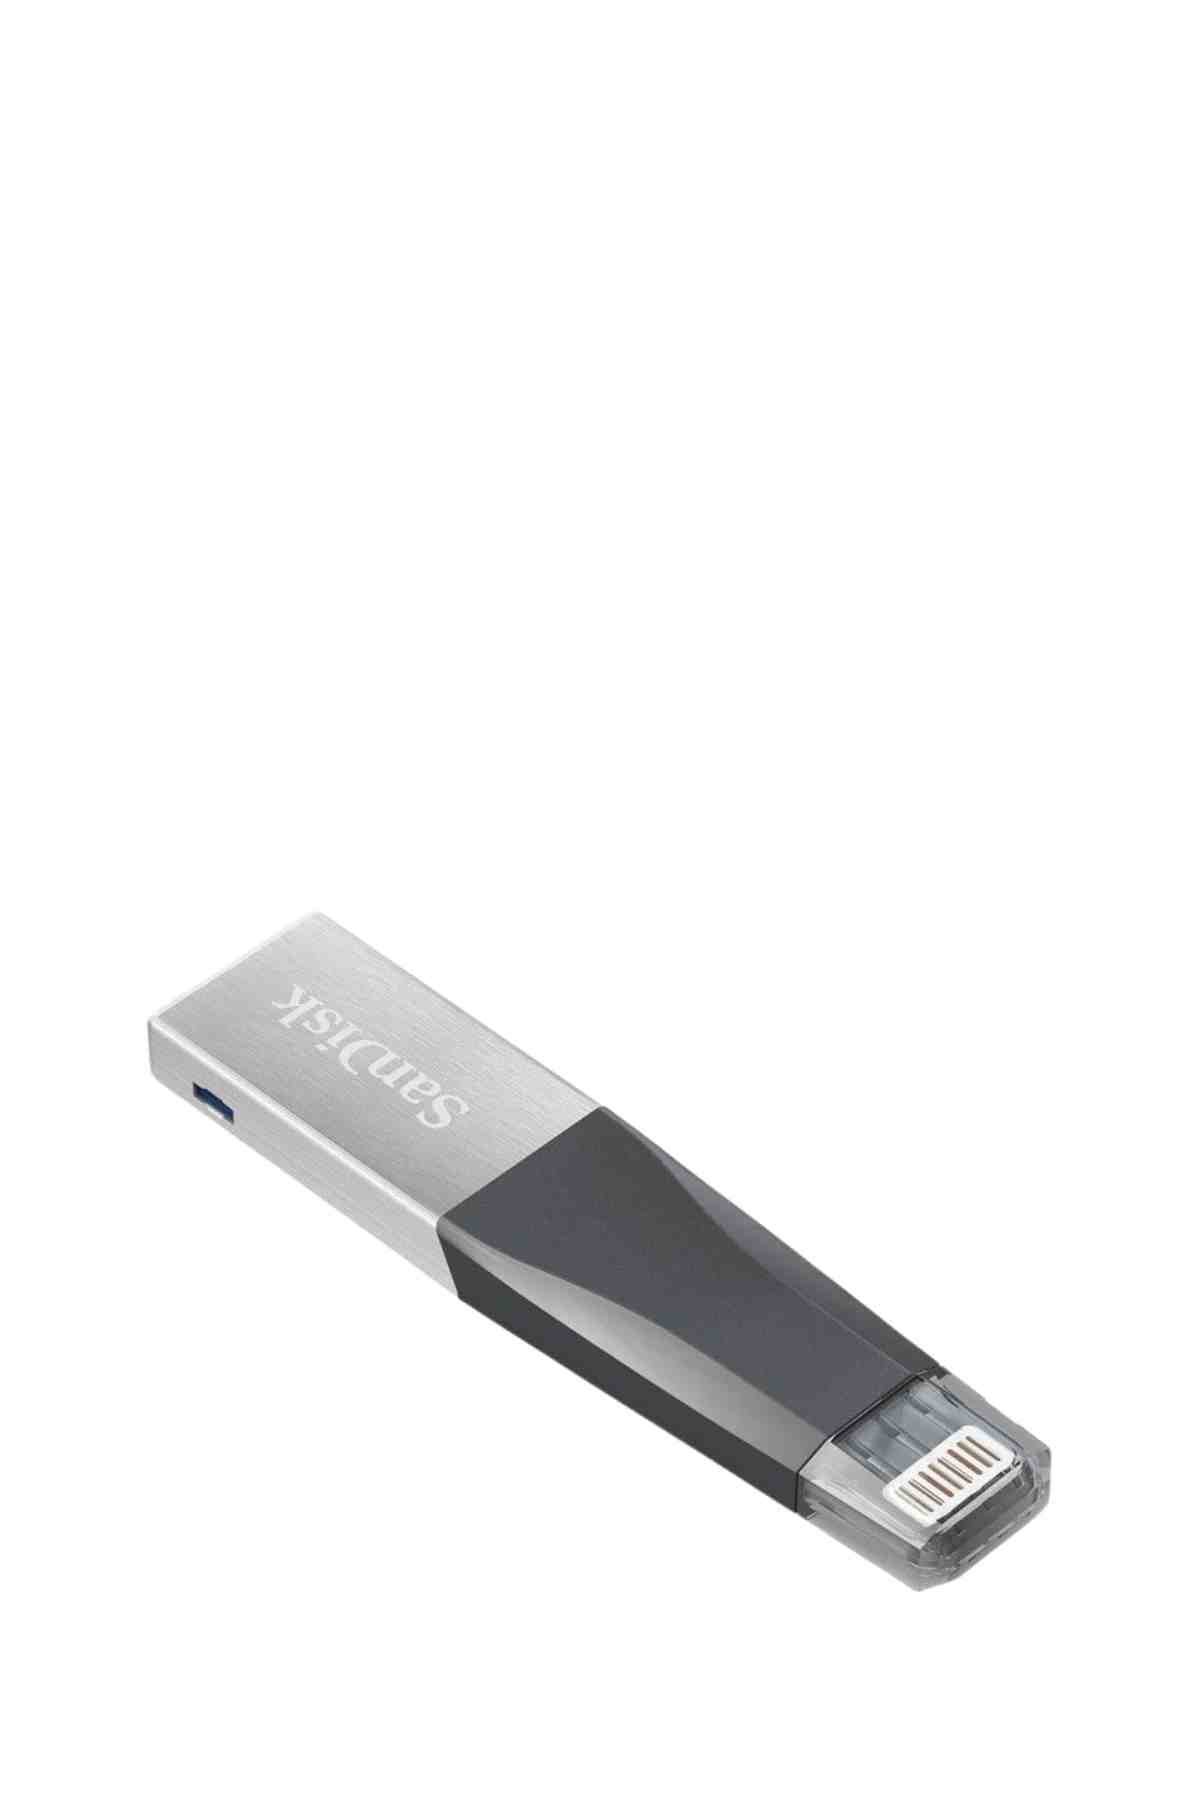 SanDisk 16GB iXpand Mini USB 3.0 Flash Bellek